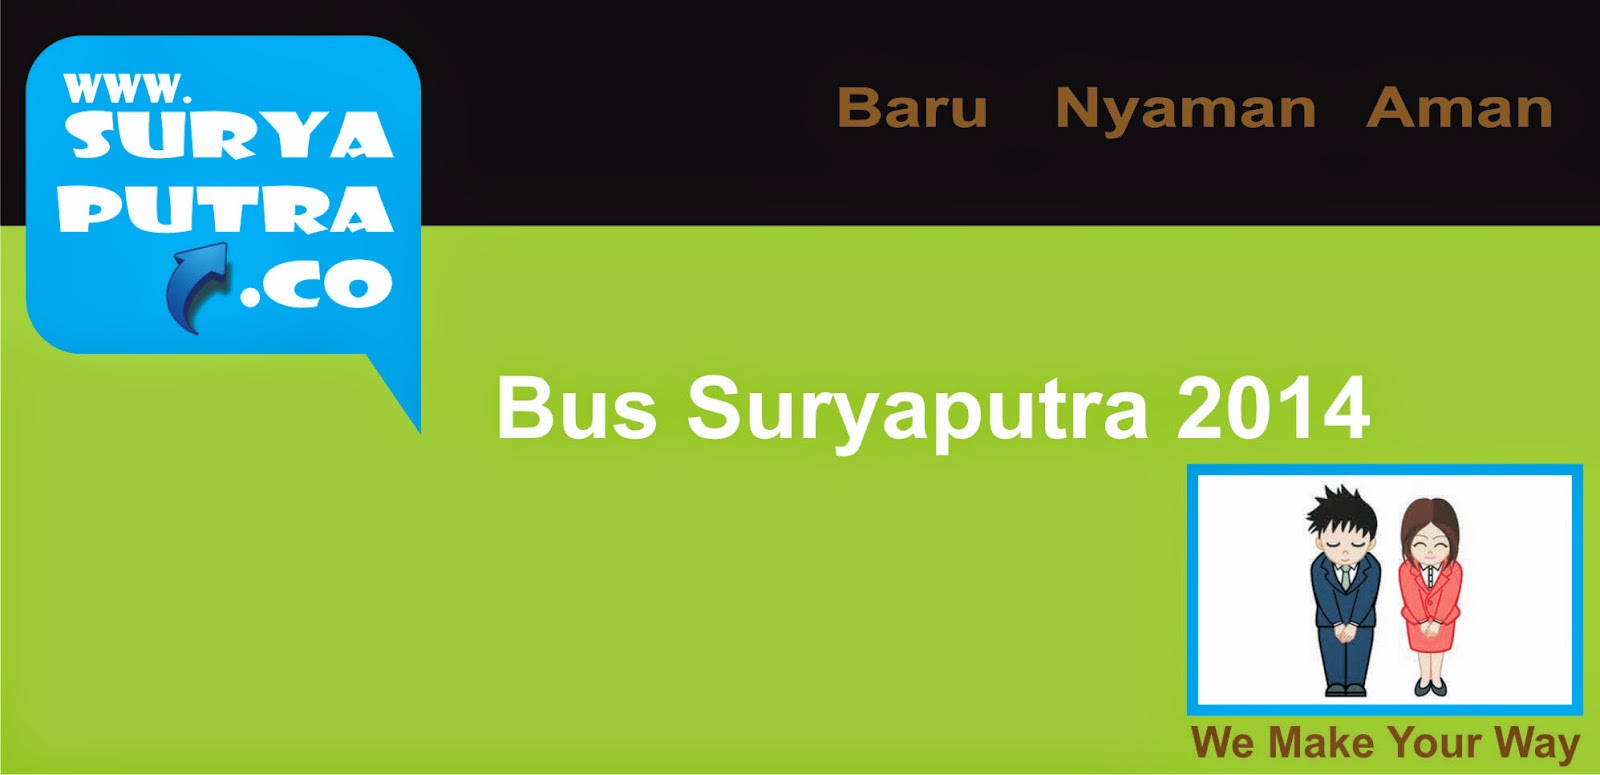 www.suryaputra.co